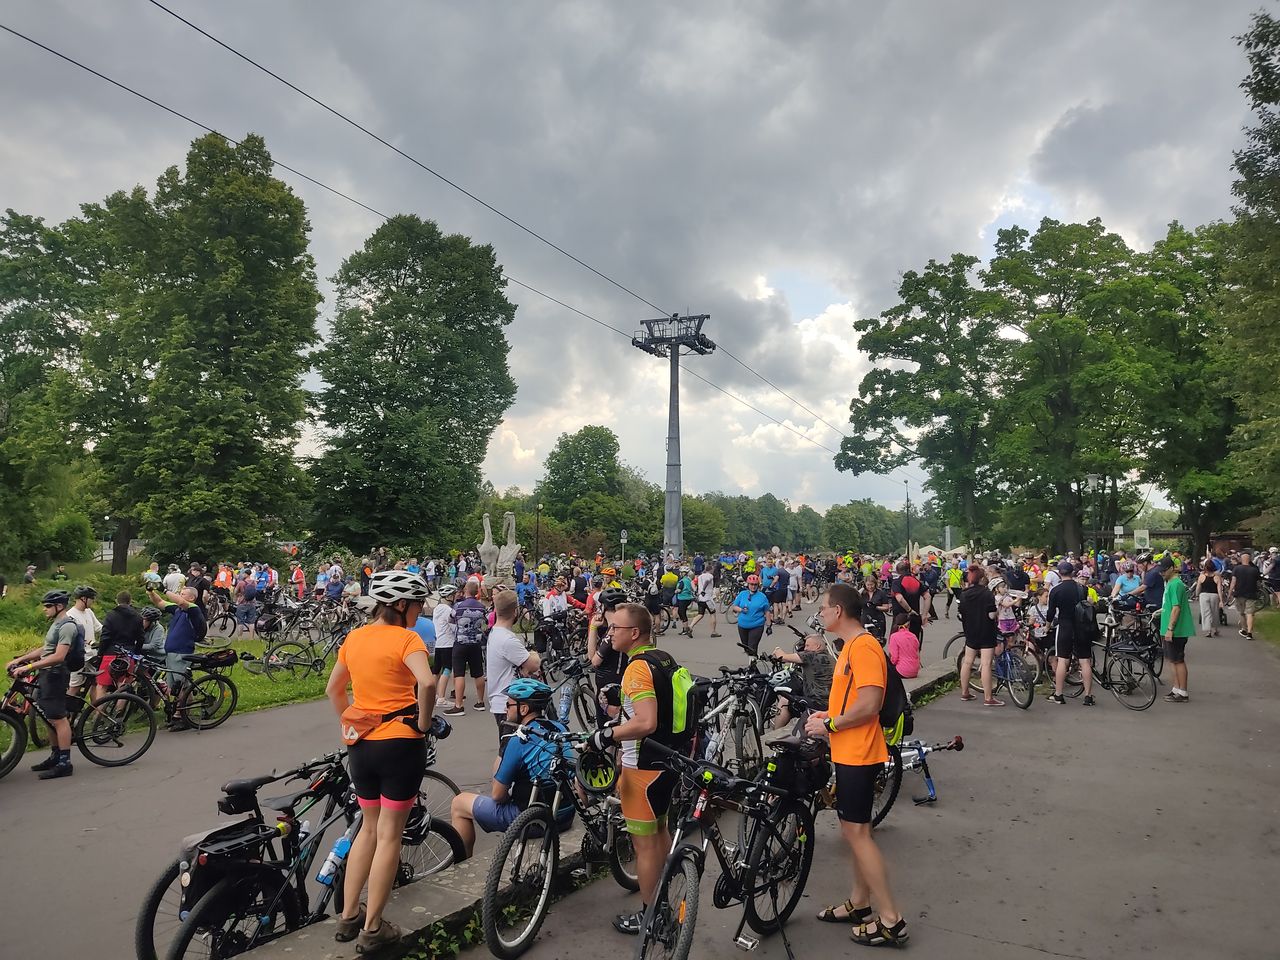 Uczestnicy Śląskiego Święta Rowerowego zbierają się na starcie w Chorzowie